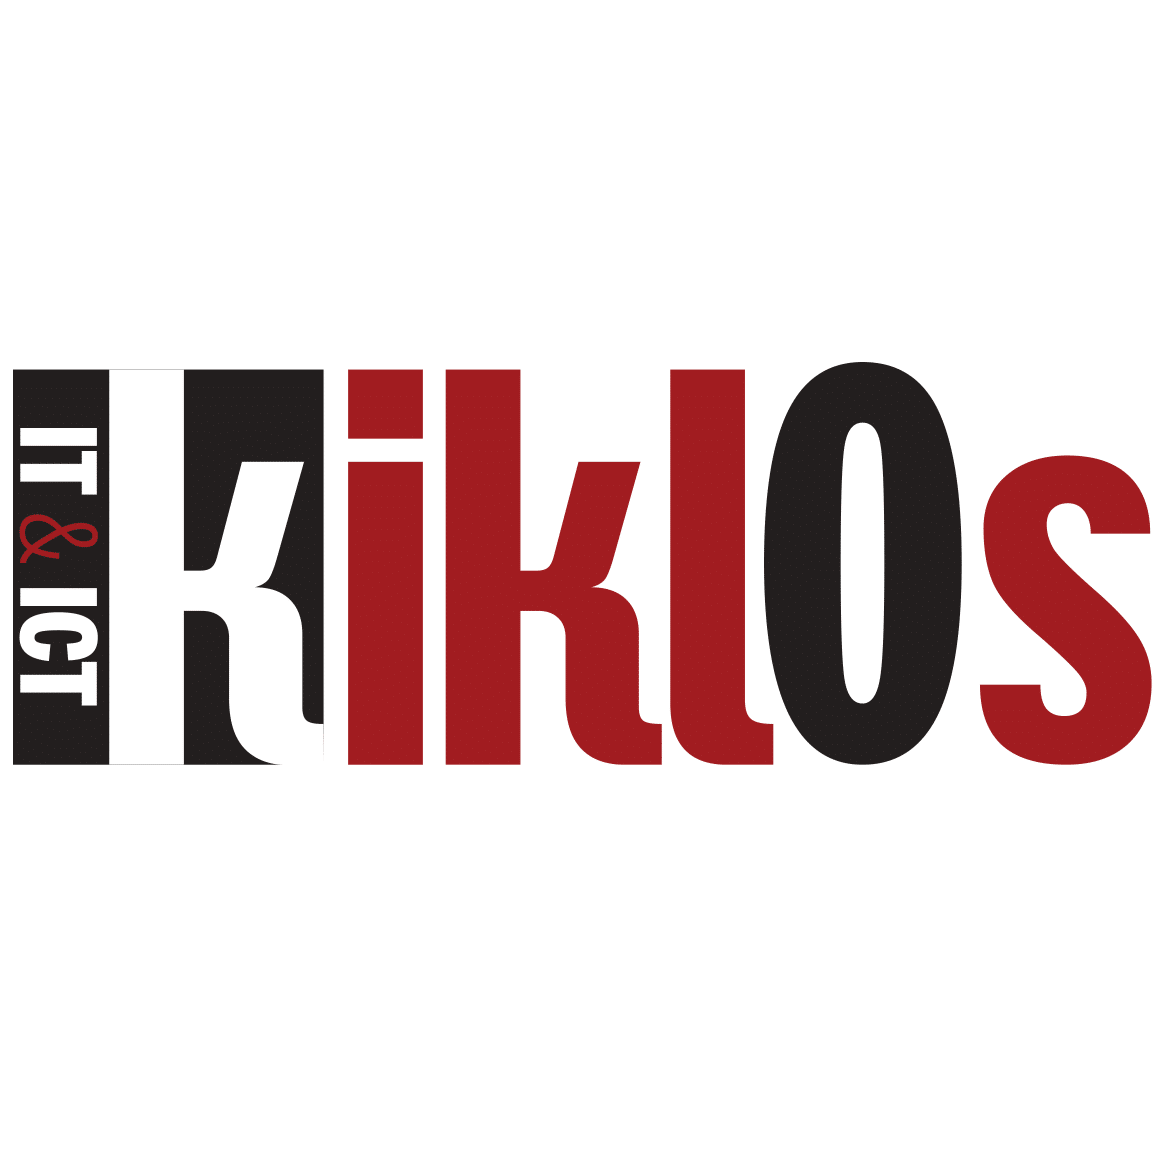 Kiklos